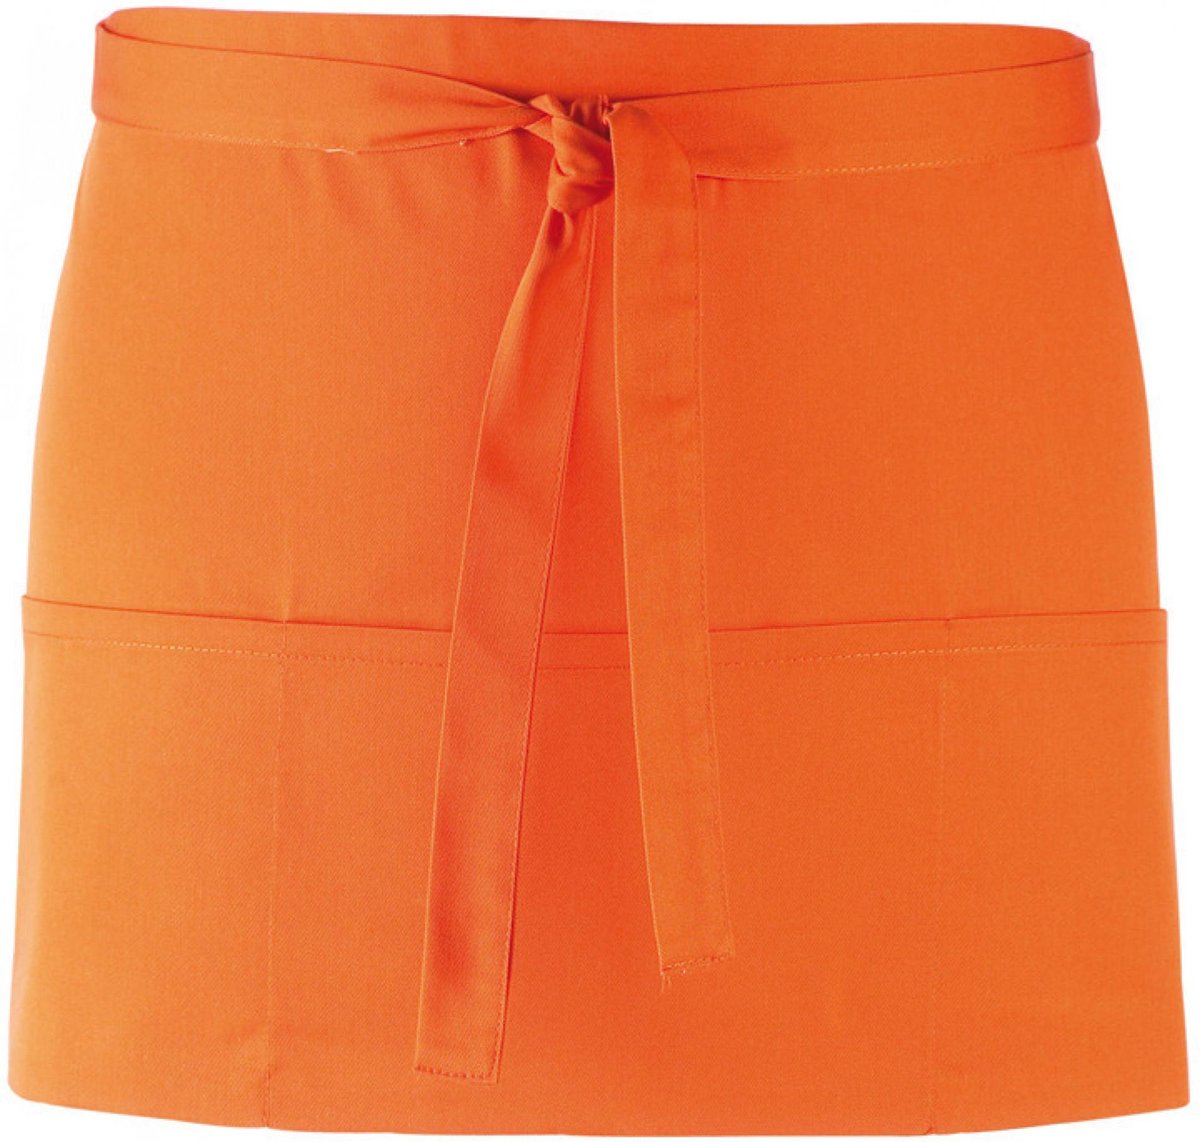 Kort schort met 3 open zakken pr155 |oranje| restaurant schort | bedieningsschort | 12 verschillende kleuren| horeca kleding